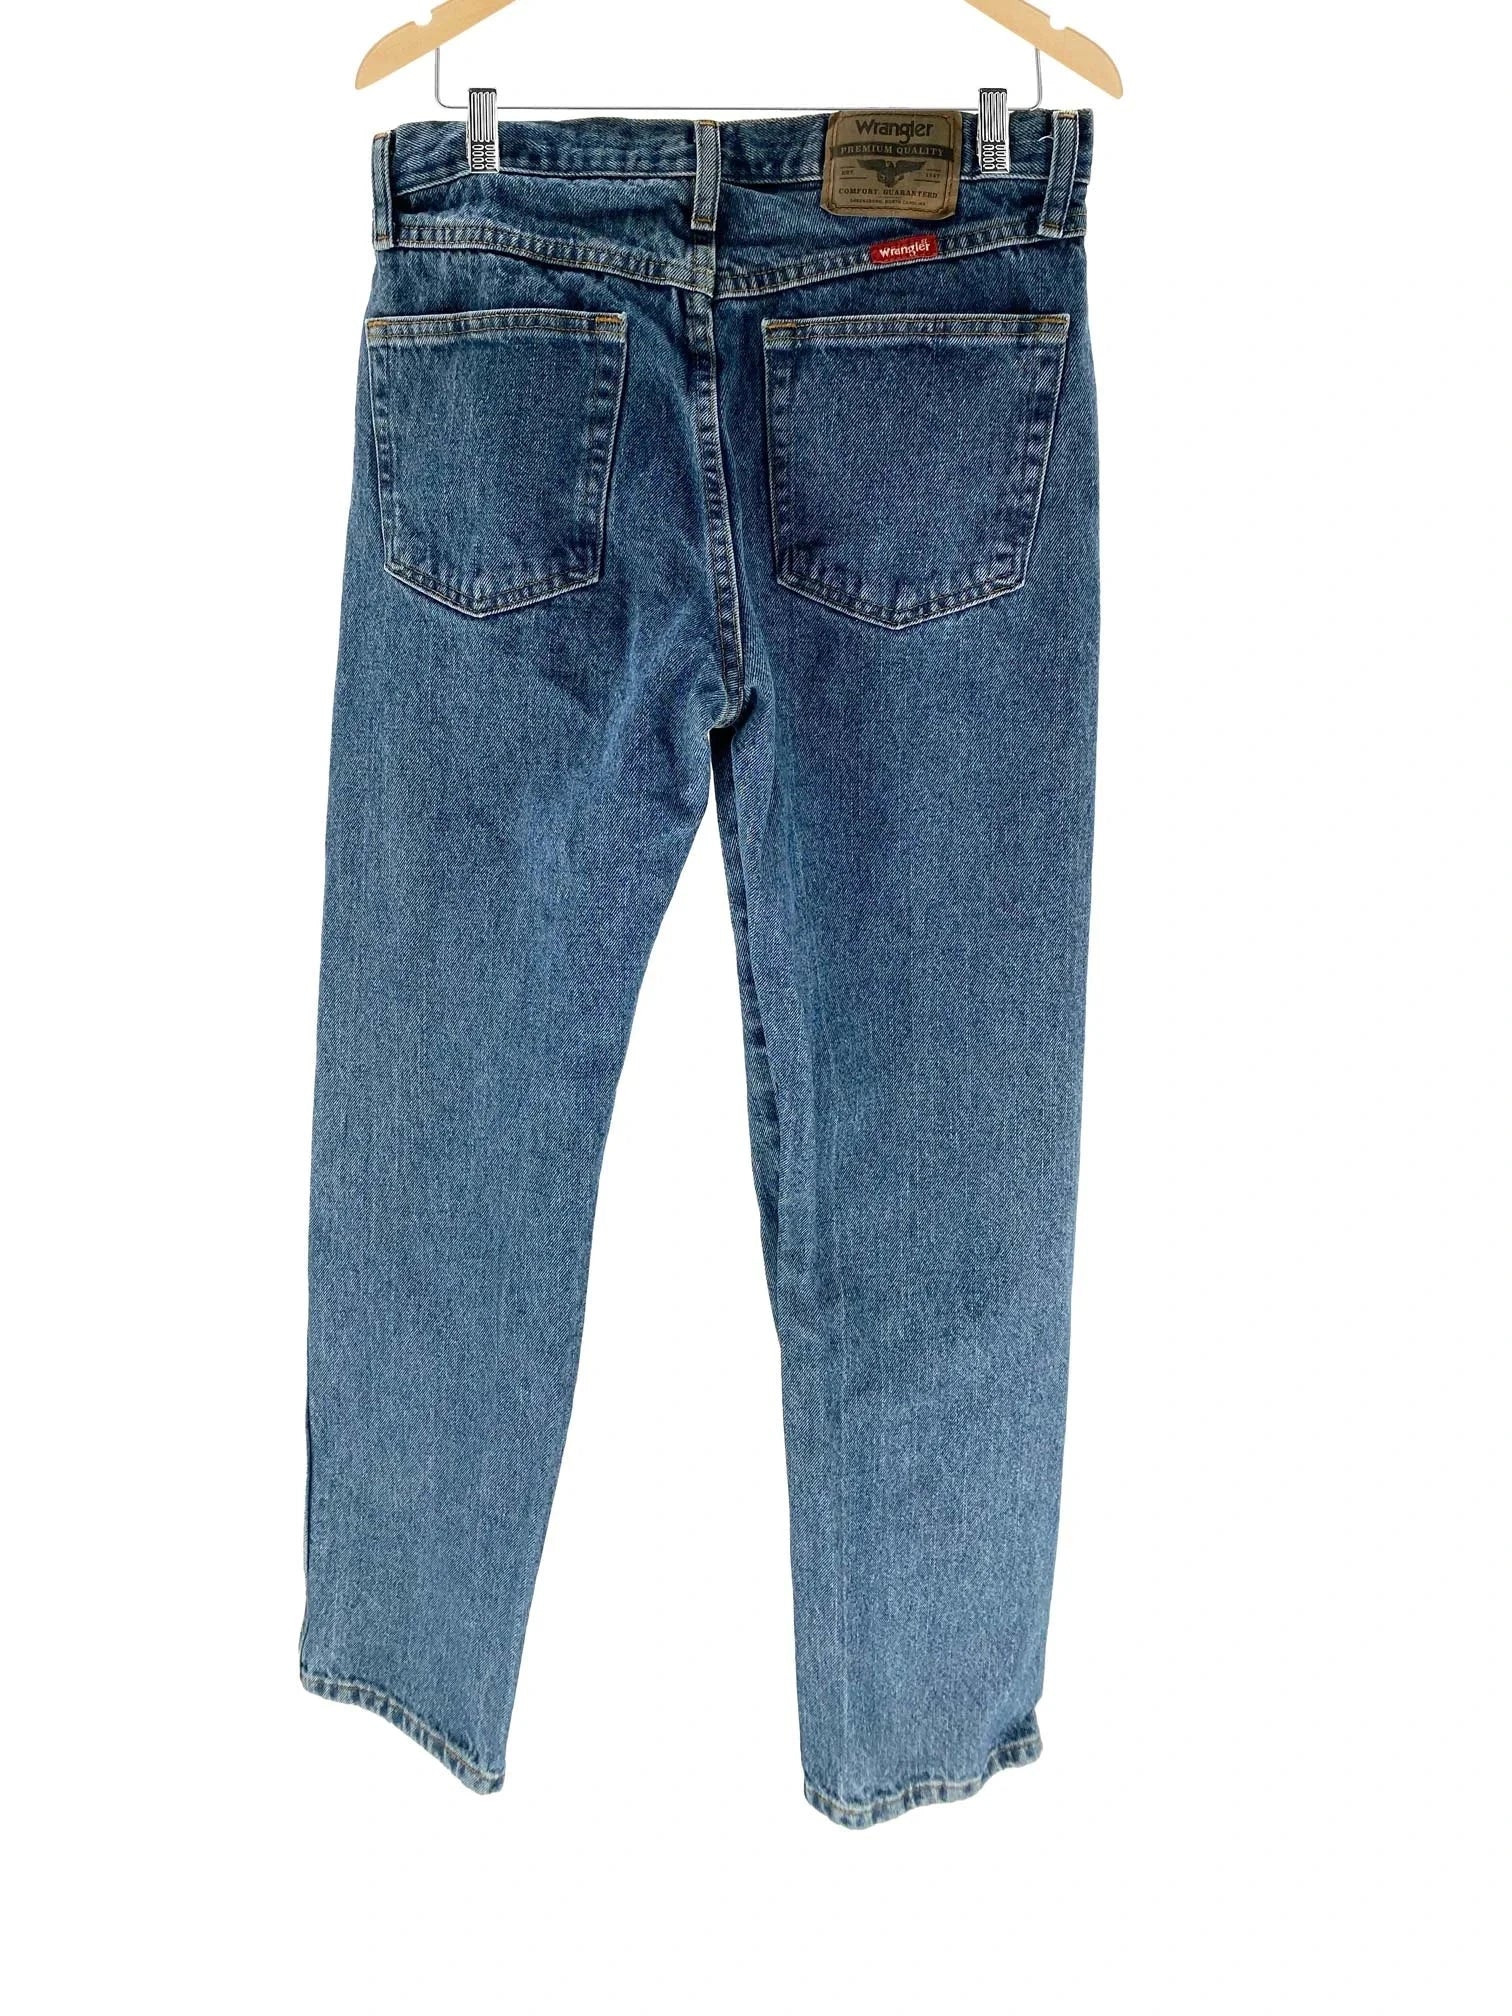 Wrangler Regular Fit Jeans - Men's 32x34 Great Lakes Reclaimed Denim